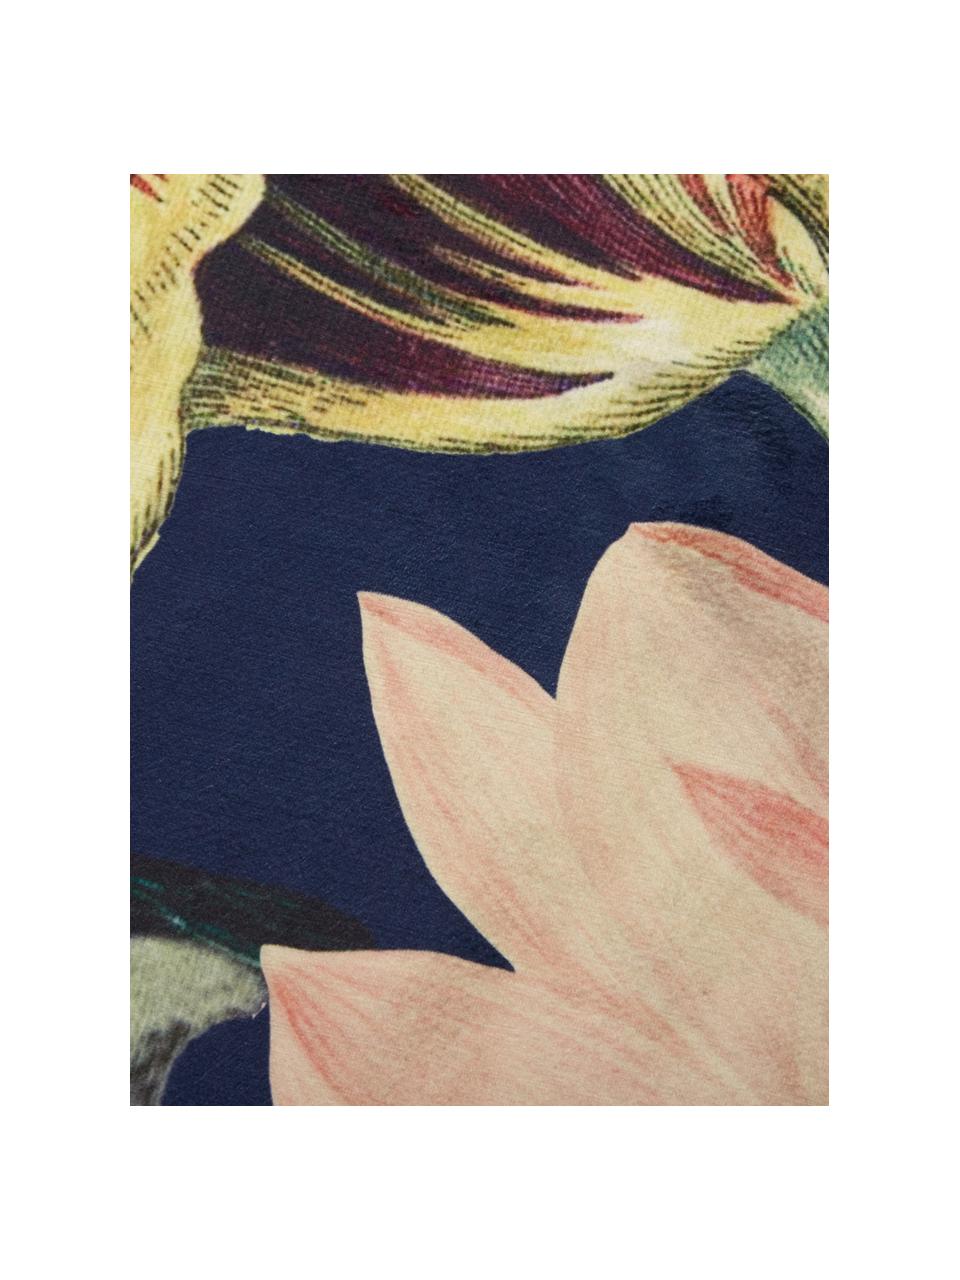 Rond vloerkleed Filou met bloemmotief, 60% polyester, 30% thermoplastisch polyurethaan, 10% katoen, Donkerblauw, multicolour, Ø 180 cm (maat L)